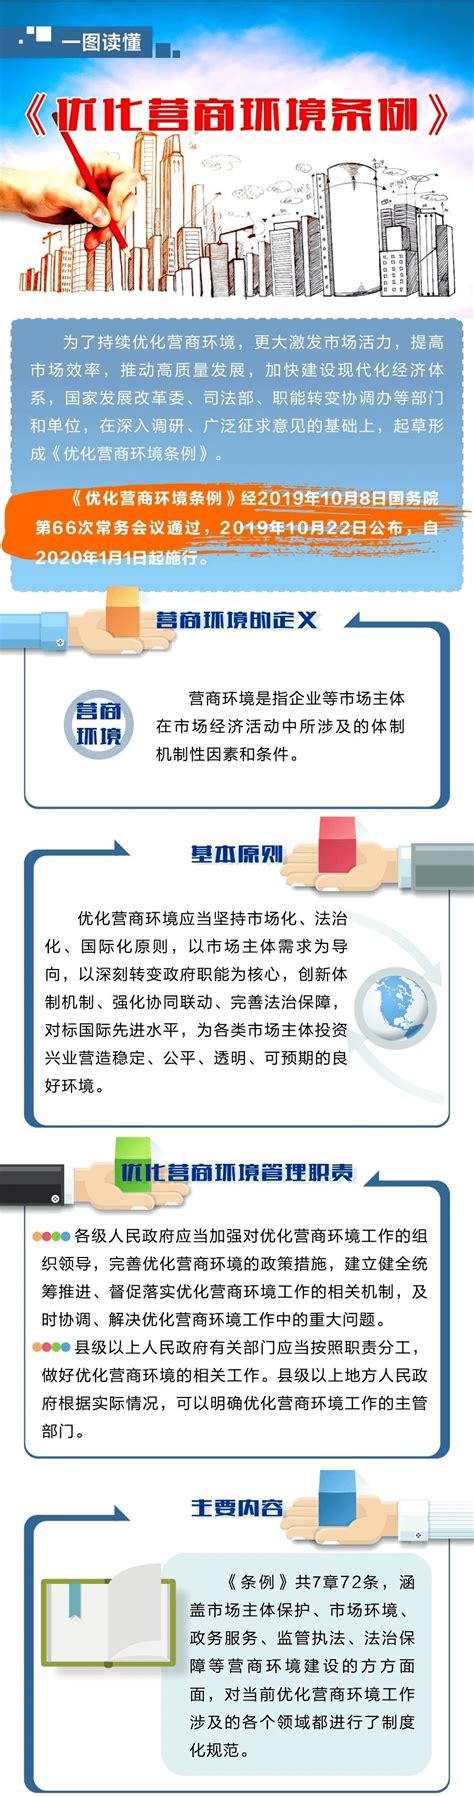 2021年湖北省知识产权保护大会 - 湖北省人民政府门户网站